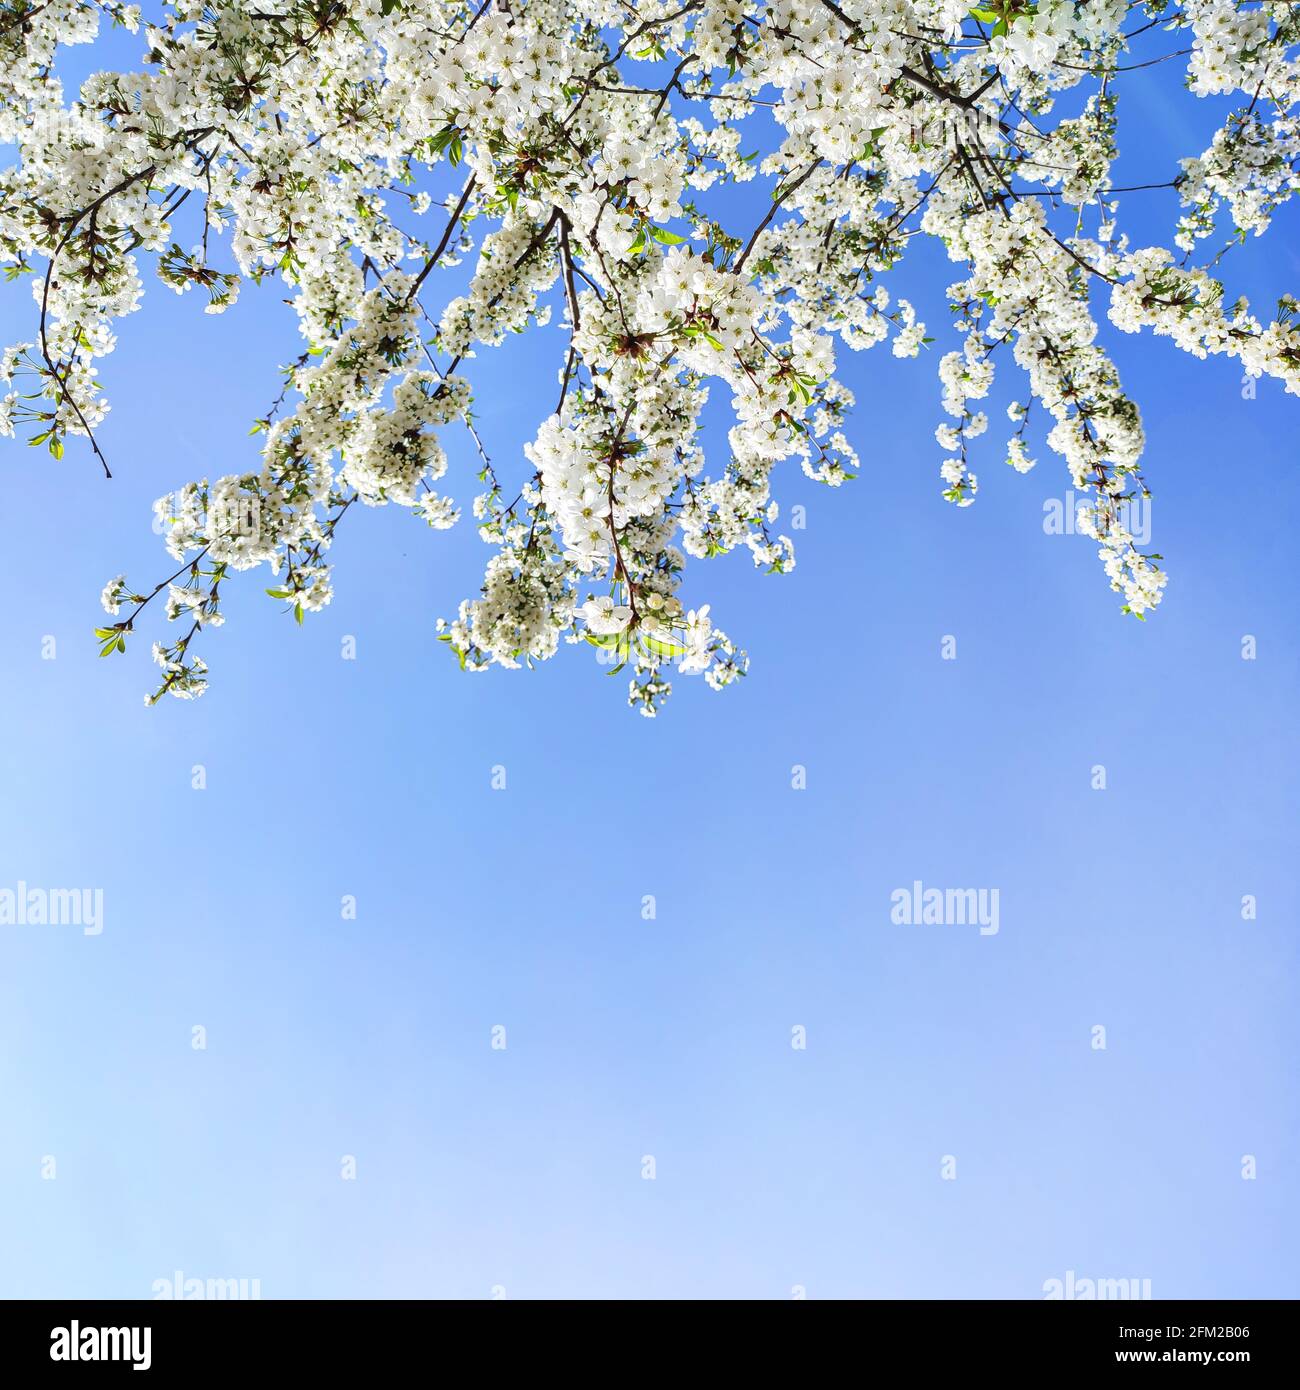 White spring flowers on fruit tree in garden, cherry blossom on light blue sky background Stock Photo